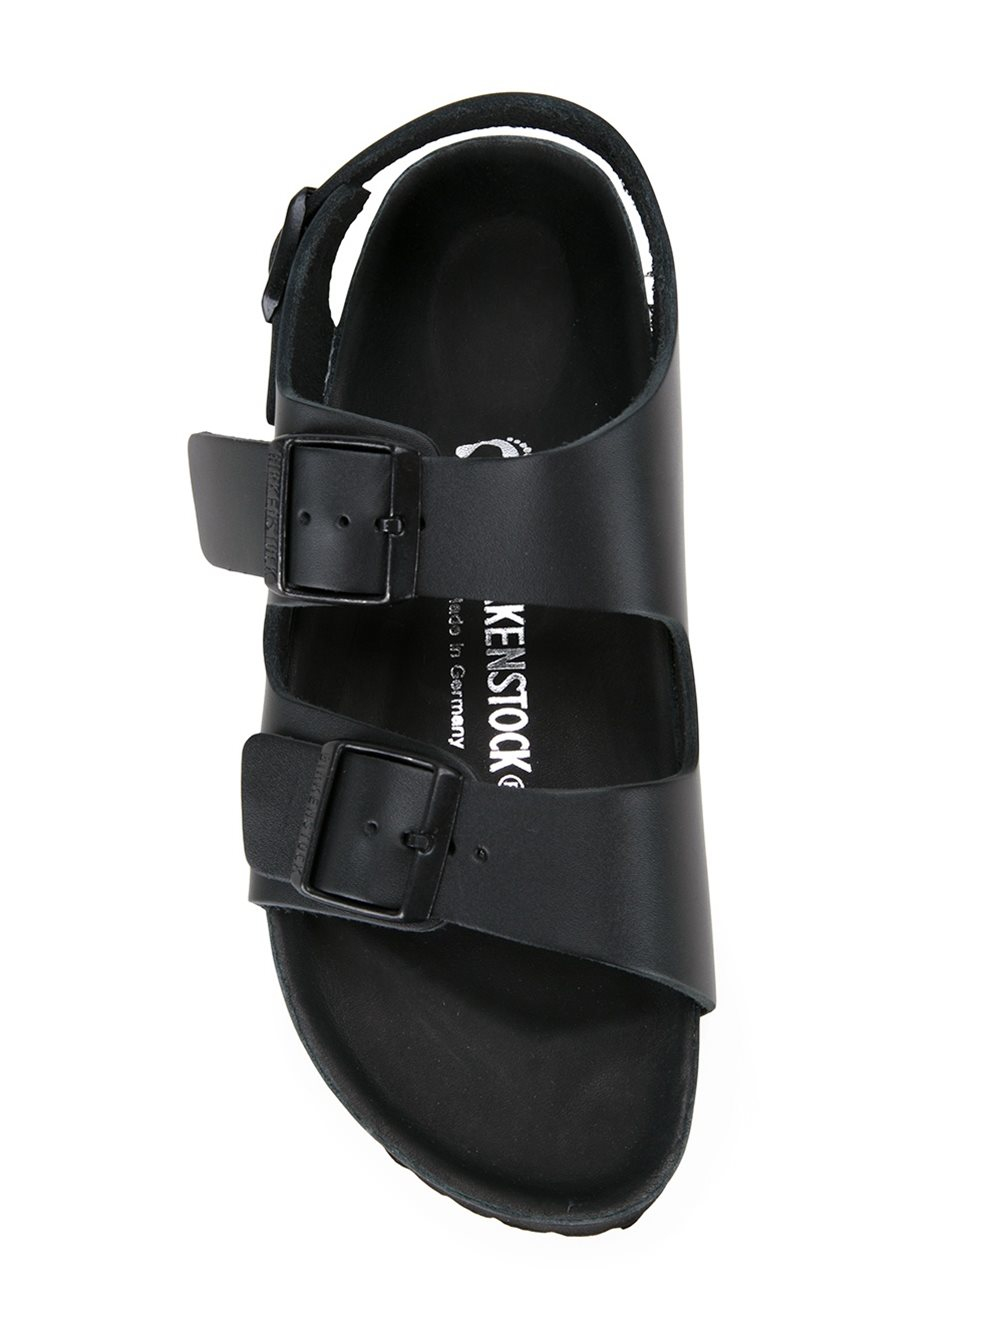 Birkenstock Leather 'milano Exquisite' Sandals in Black - Lyst